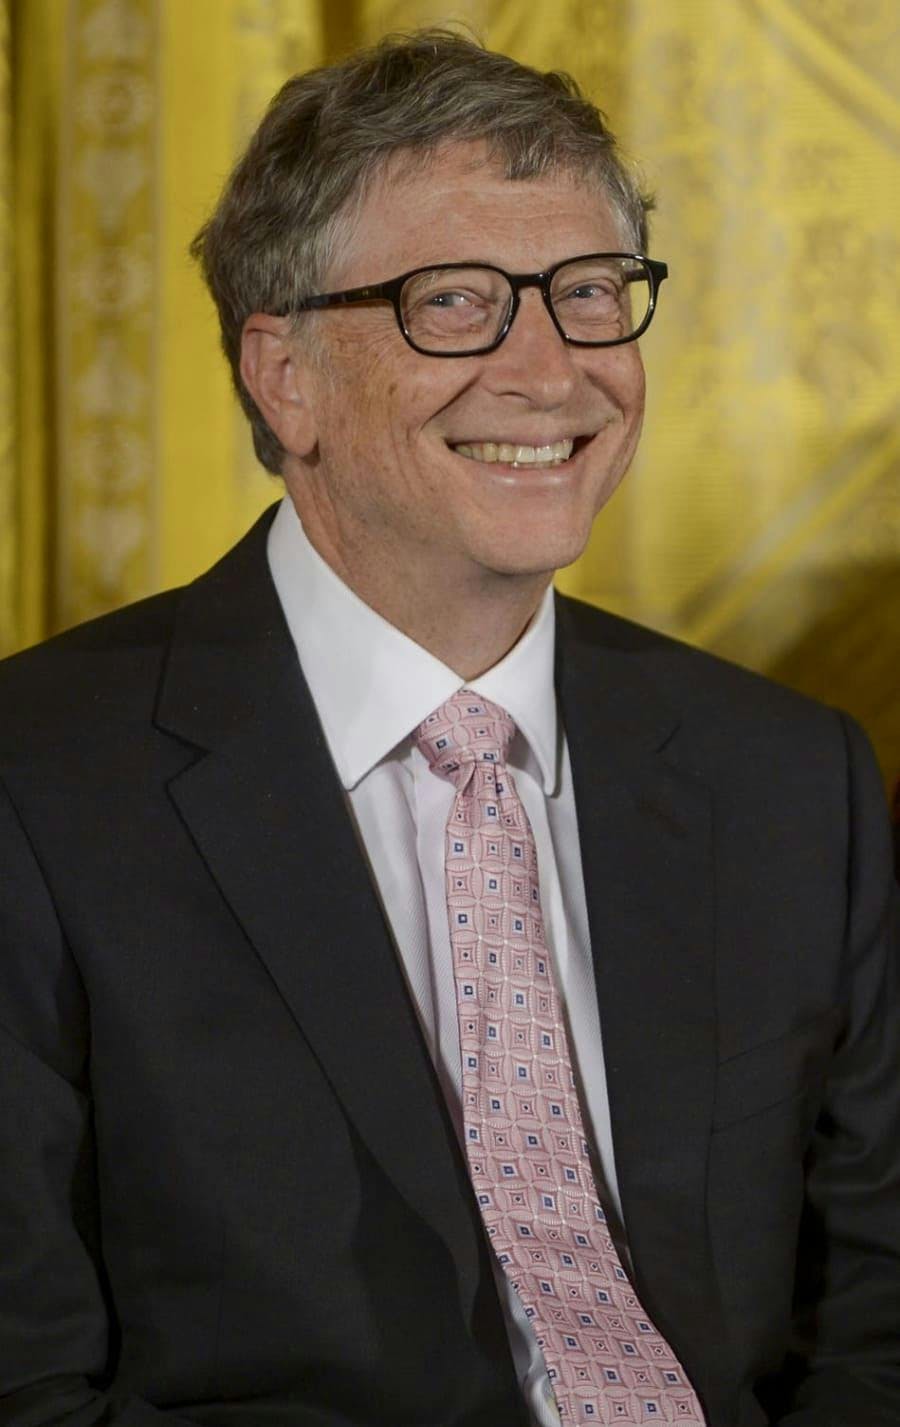 Bill Gates divulga lista de livros